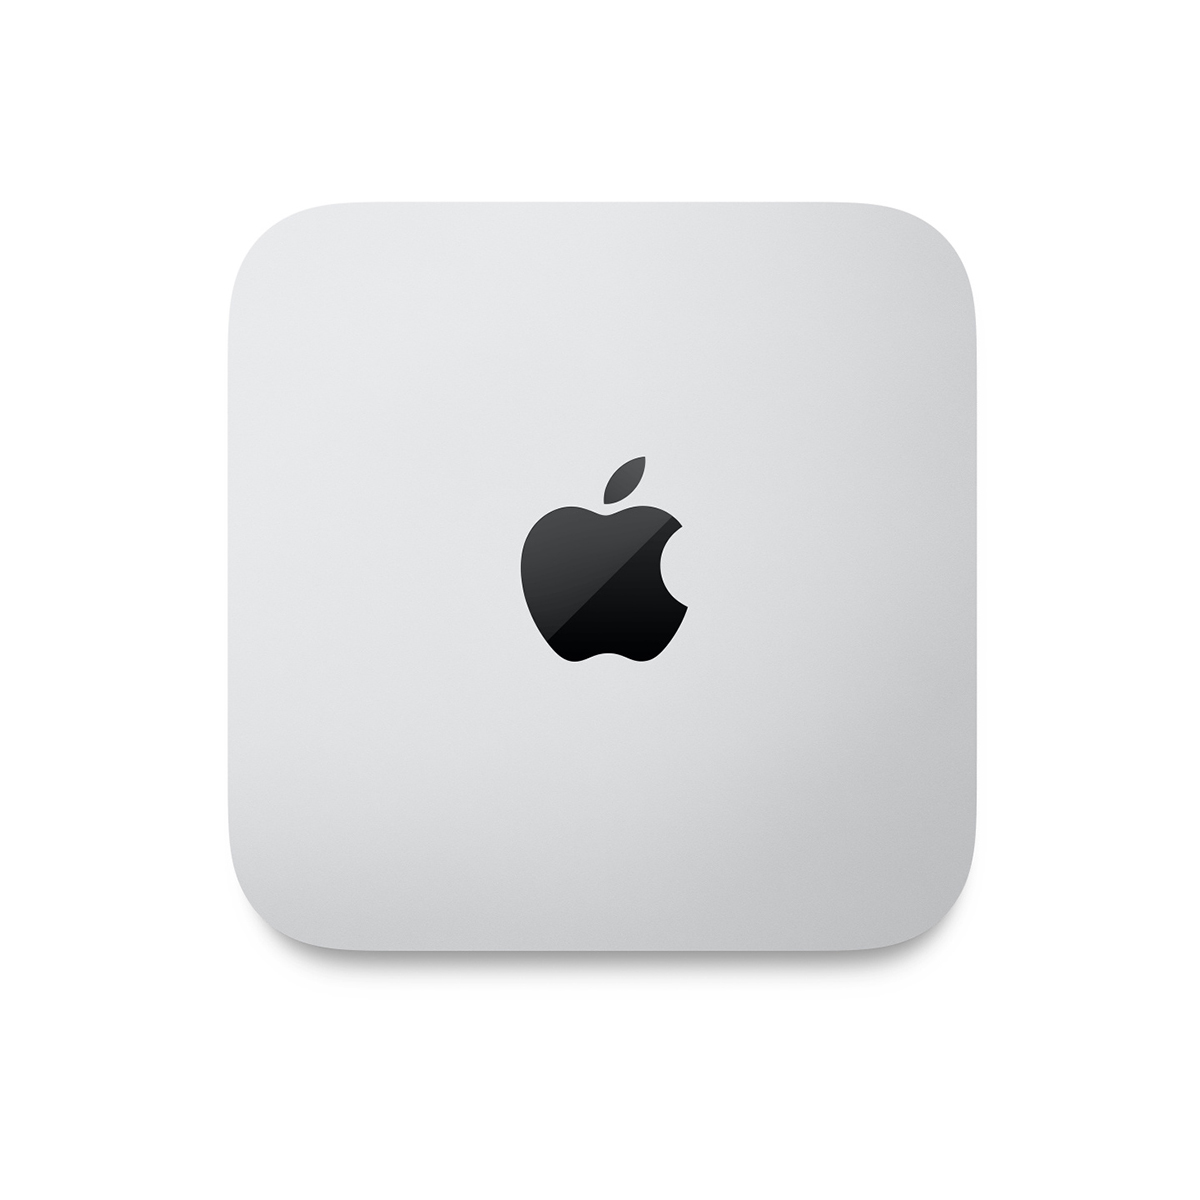 Mac mini: Apple M2 chip with 8core CPU and 10core GPU, 256GB SSD